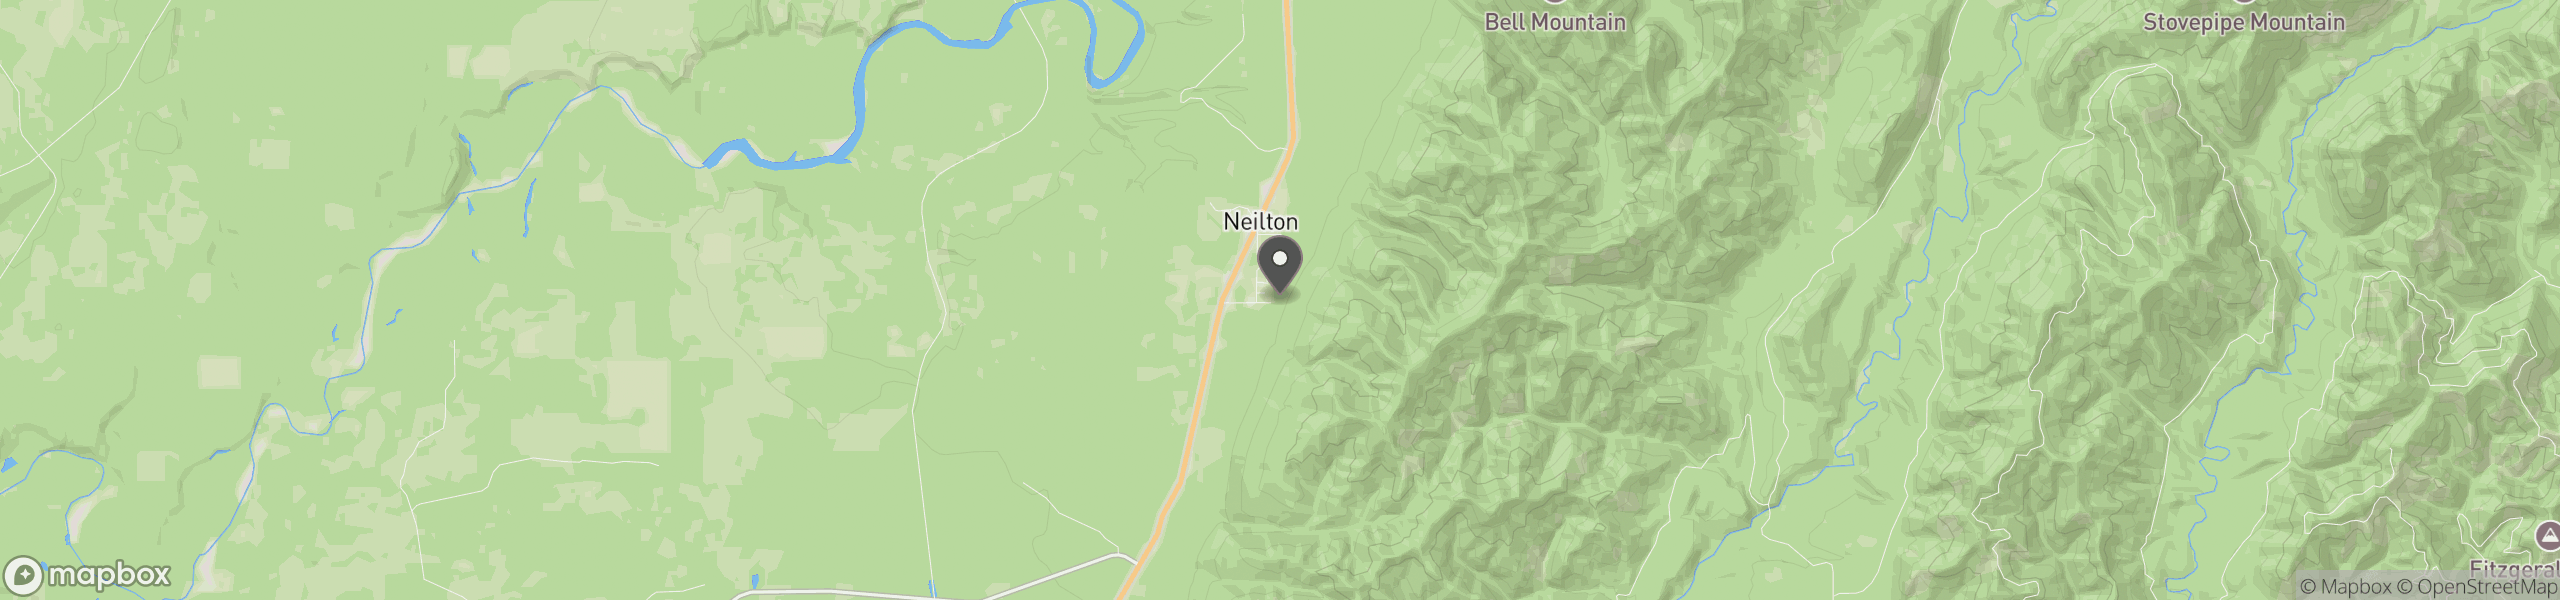 Neilton, WA 98566